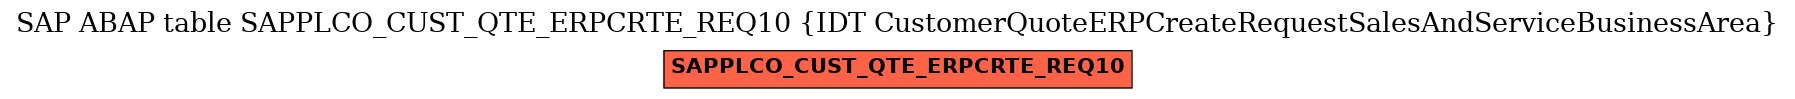 E-R Diagram for table SAPPLCO_CUST_QTE_ERPCRTE_REQ10 (IDT CustomerQuoteERPCreateRequestSalesAndServiceBusinessArea)